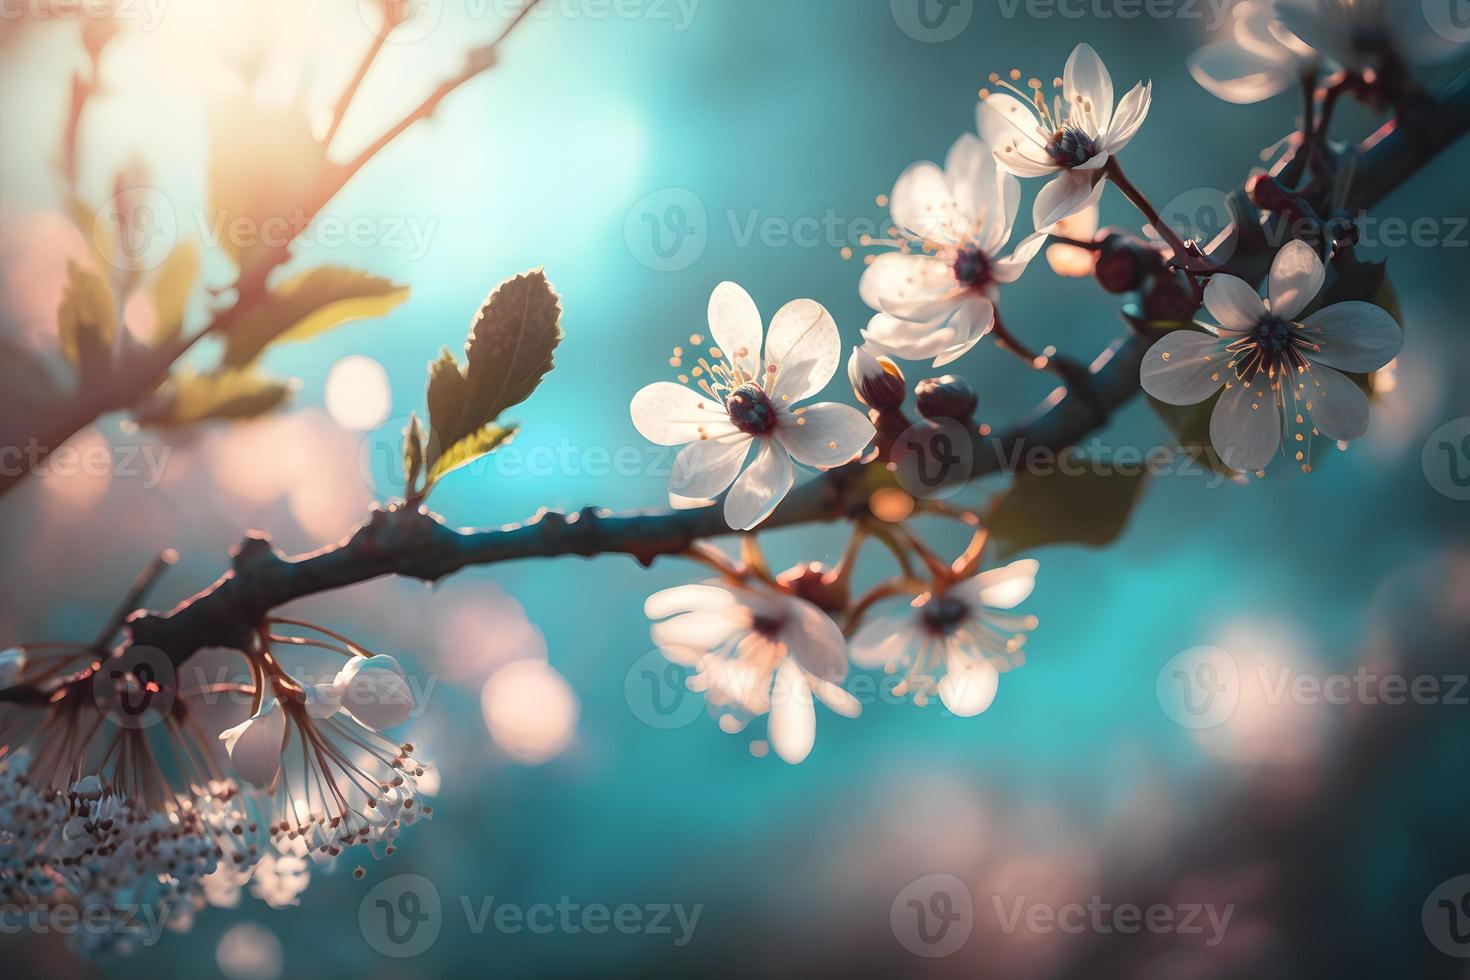 fotos ramas de cierne Cereza macro con suave atención en amable ligero azul cielo antecedentes en luz de sol con Copiar espacio. hermosa floral imagen de primavera naturaleza, fotografía